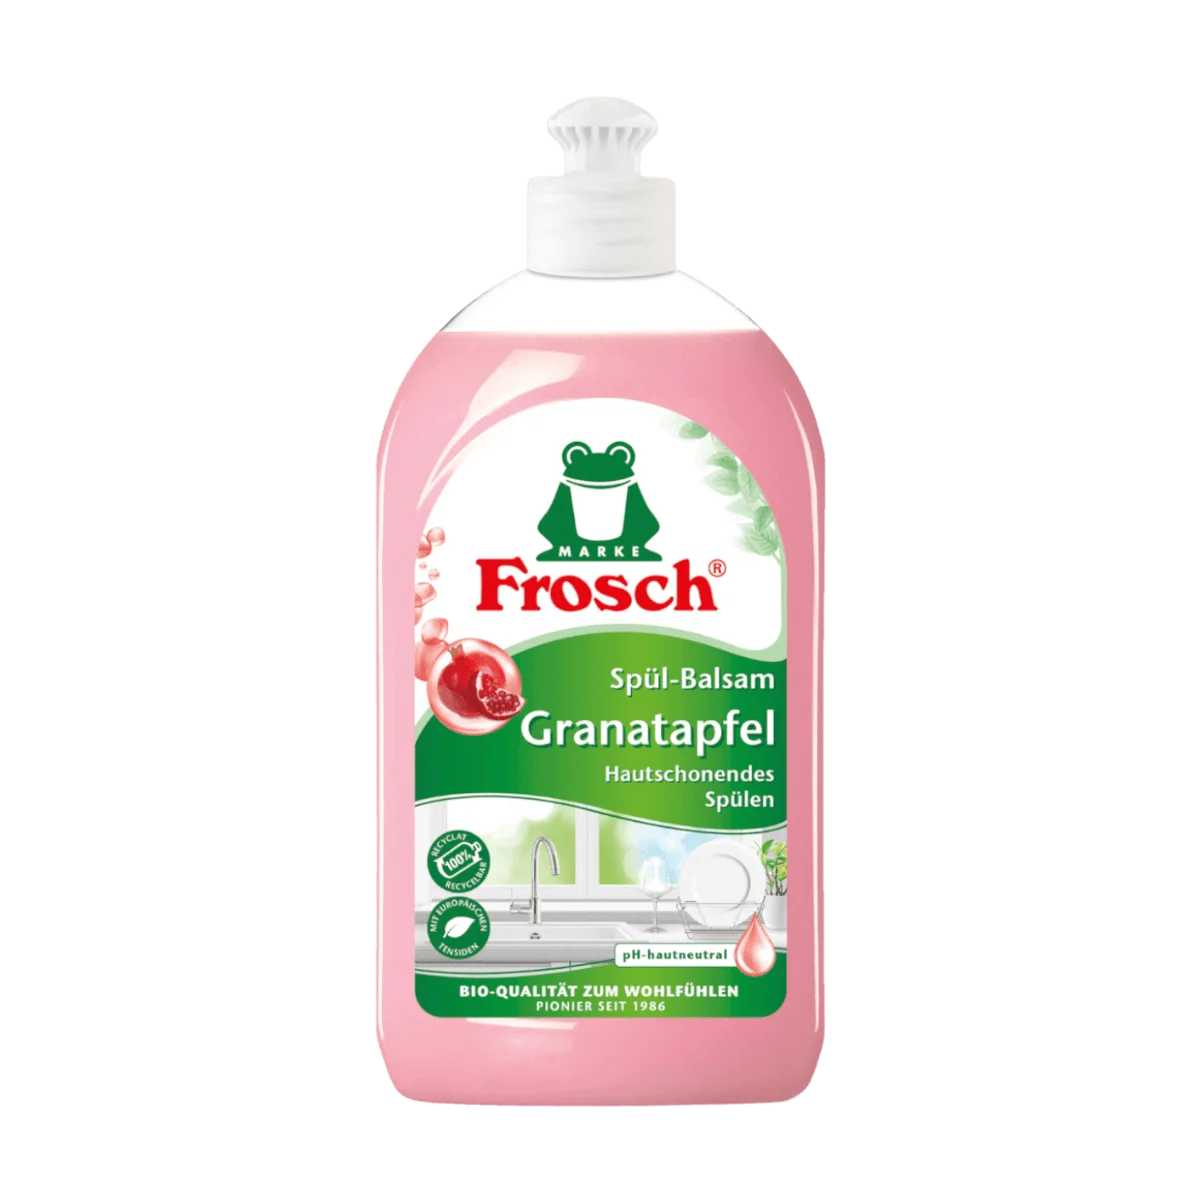 Frosch Spül-Balsam Granatapfel, 500 ml